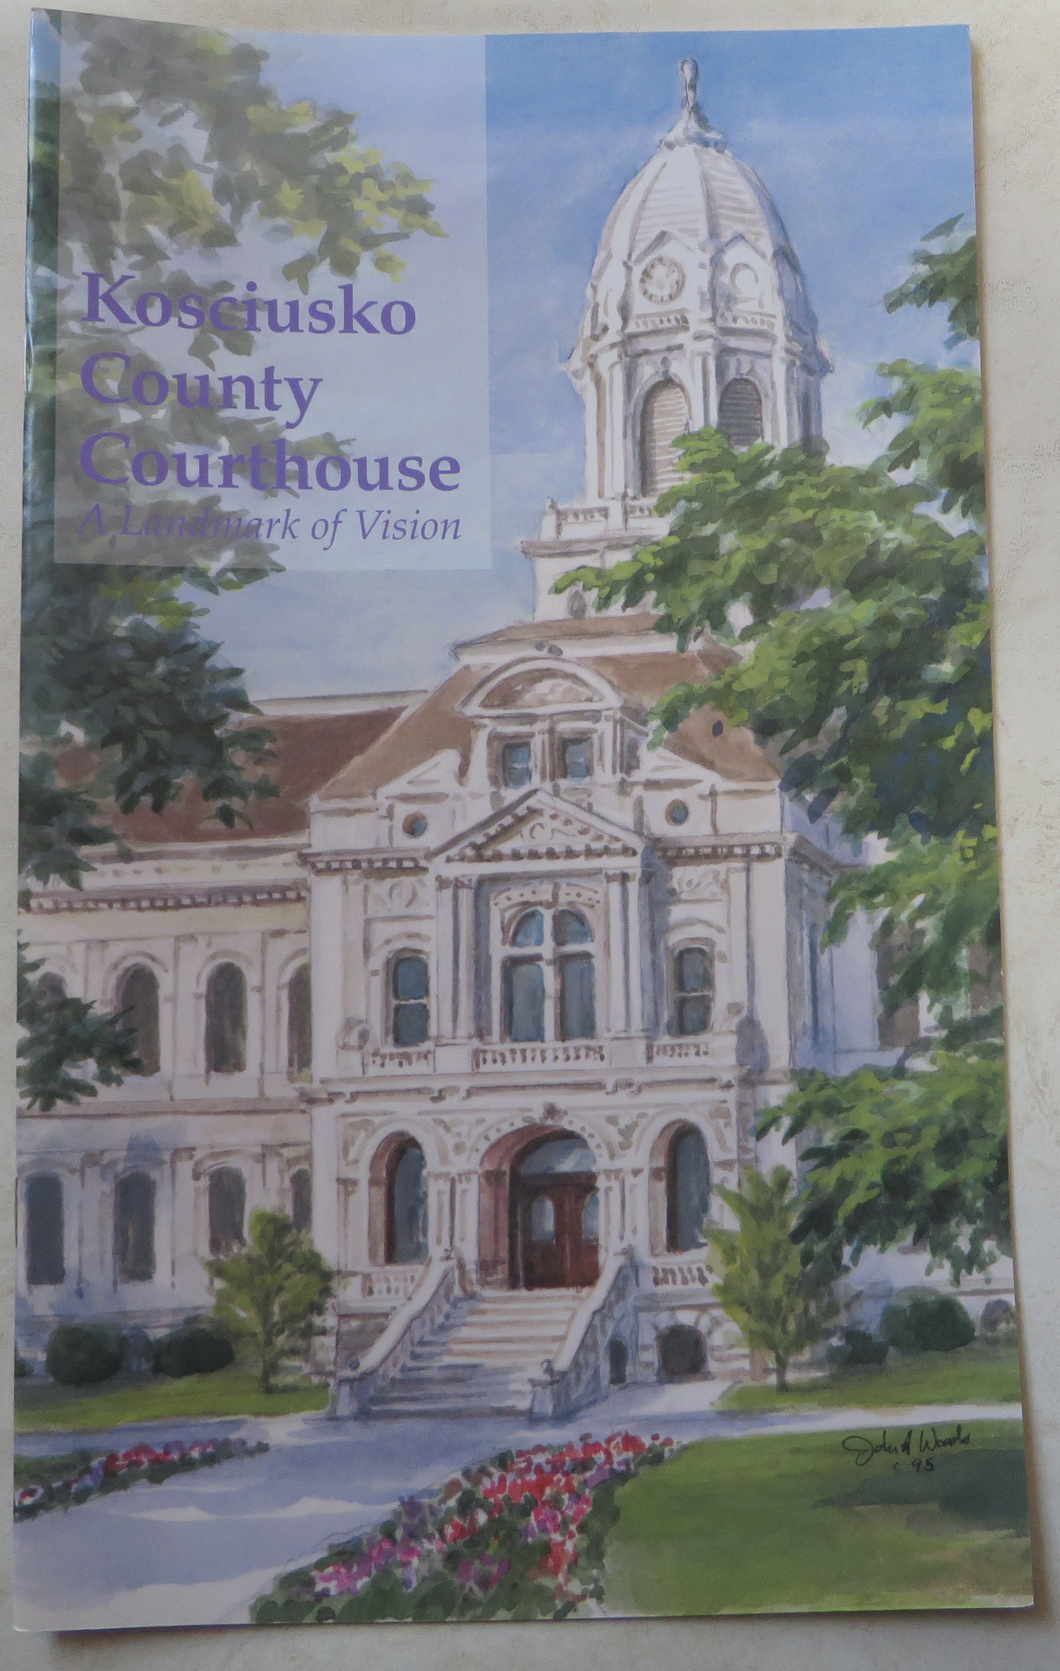 Kosciusko County Courthouse, A Landmark of Vision